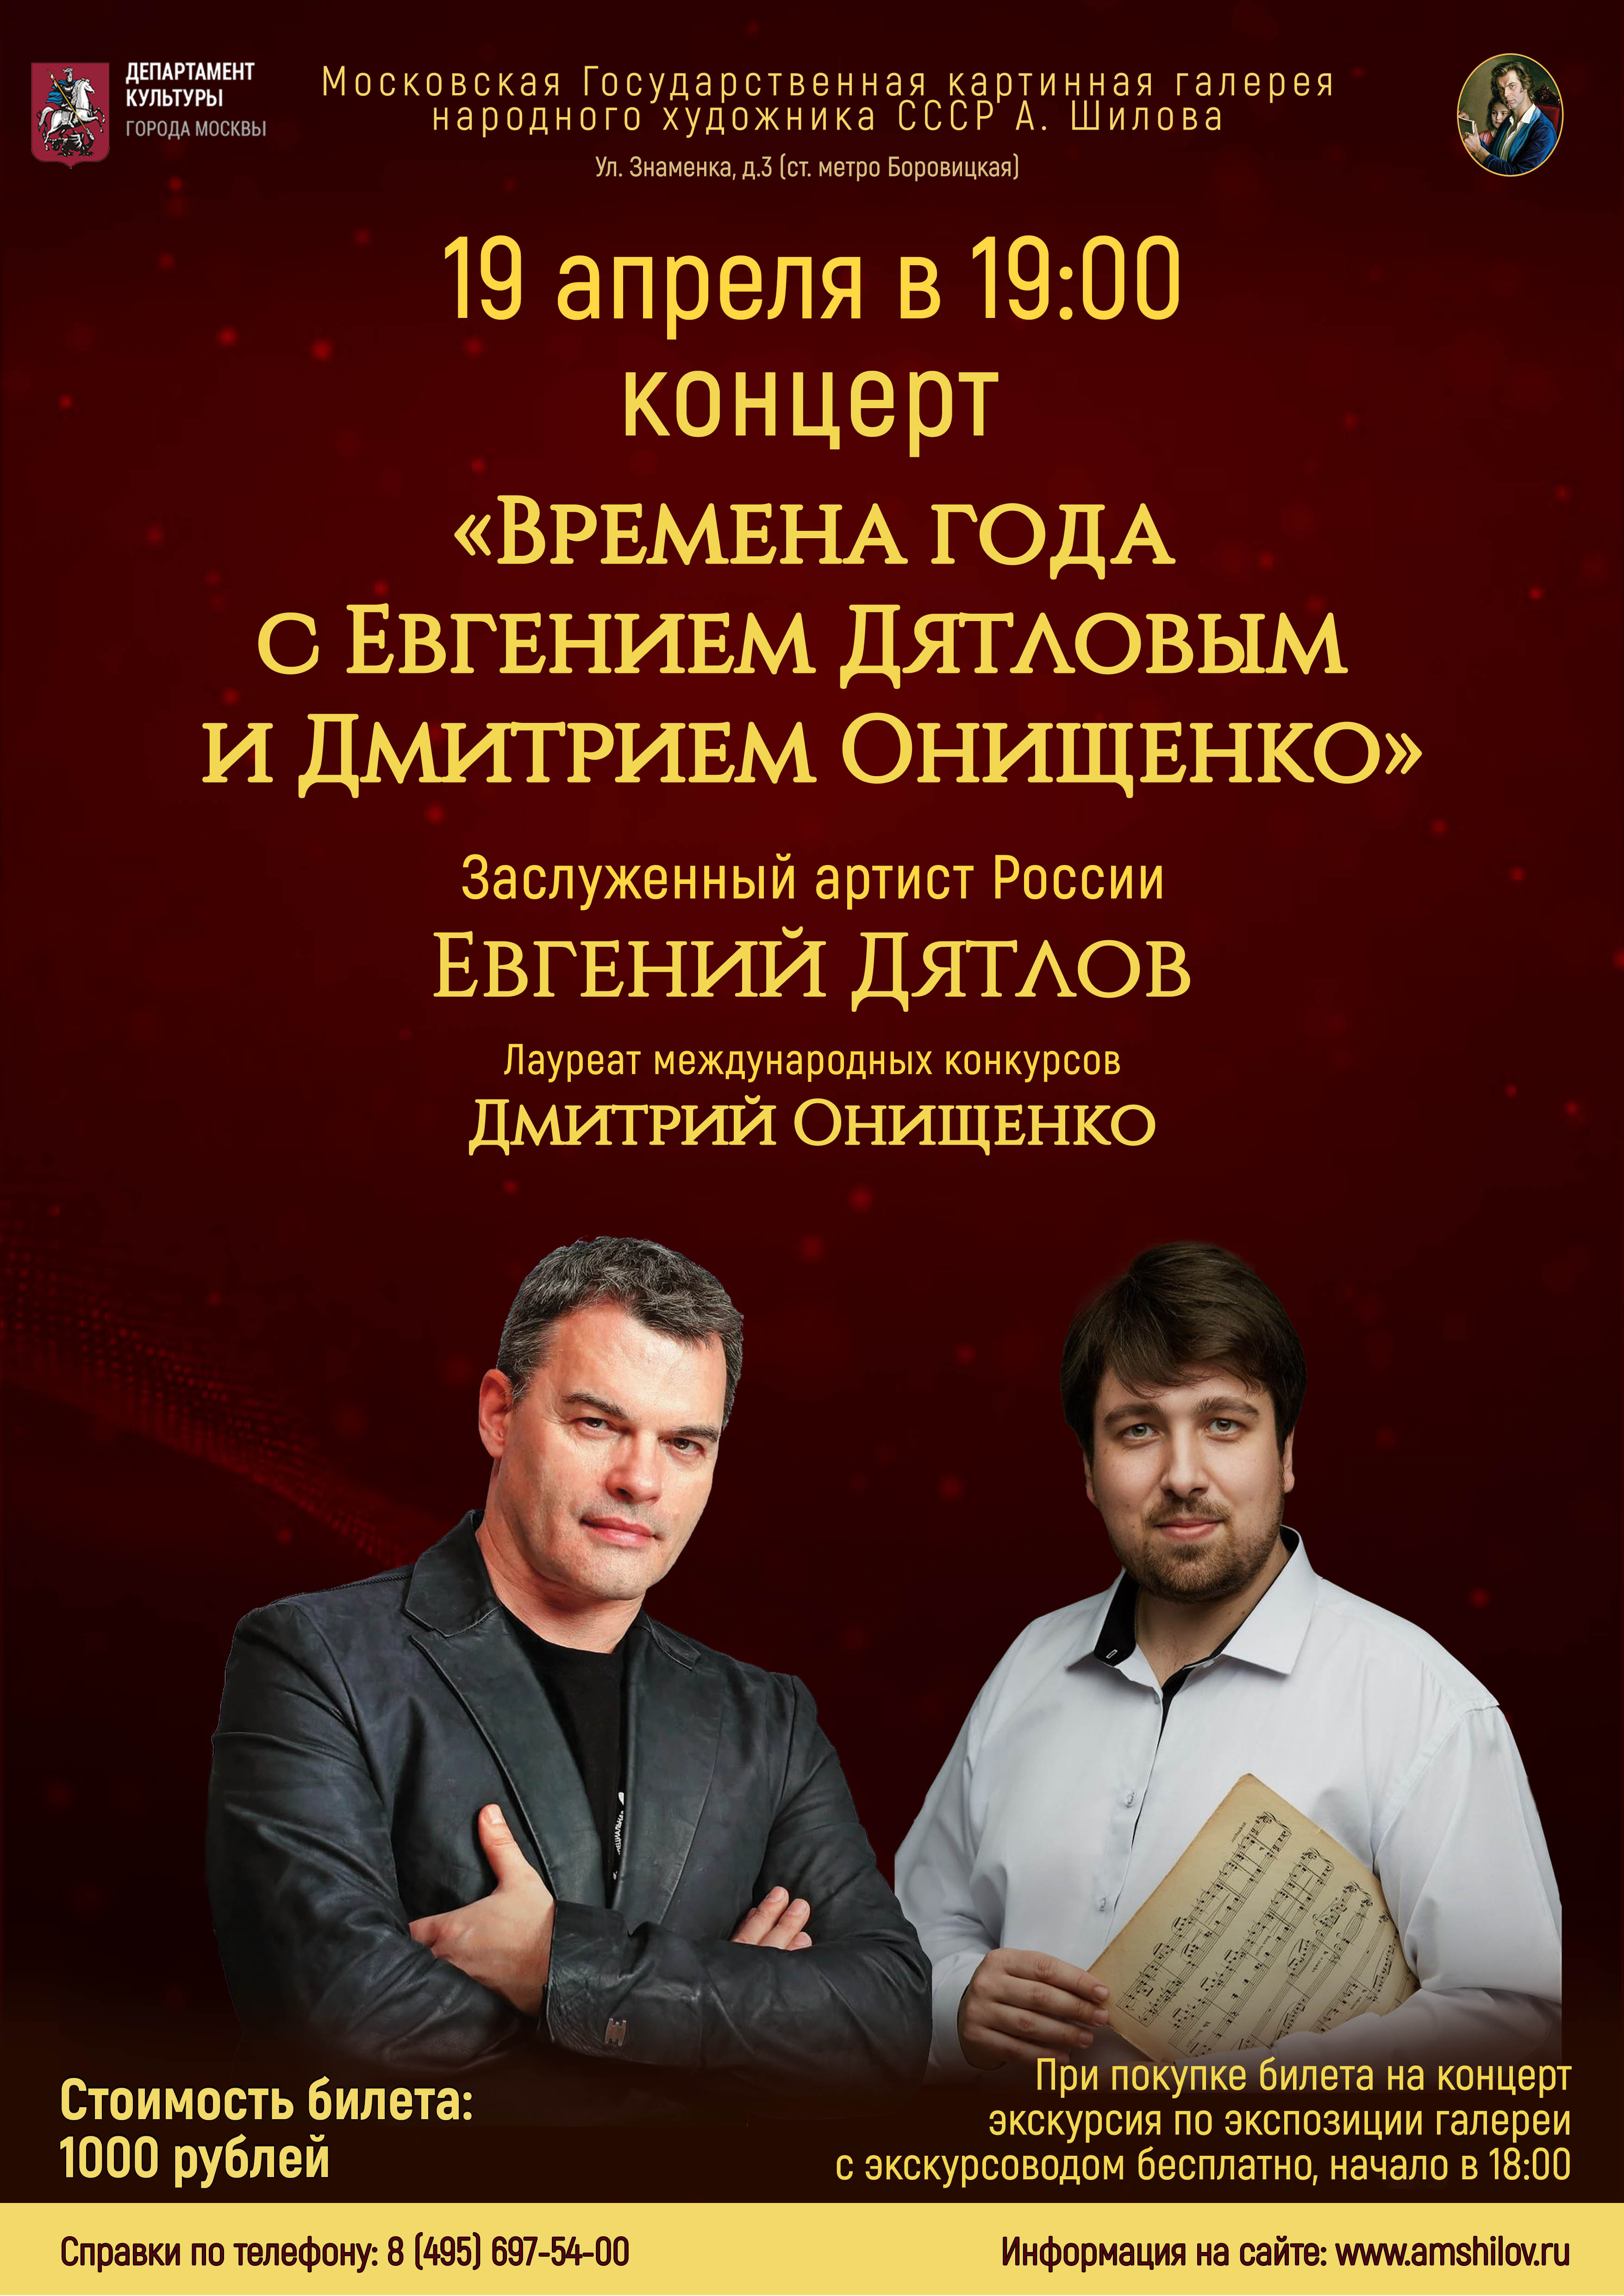 Концерт «Времена года с Евгением Дятловым и Дмитрием Онищенко»